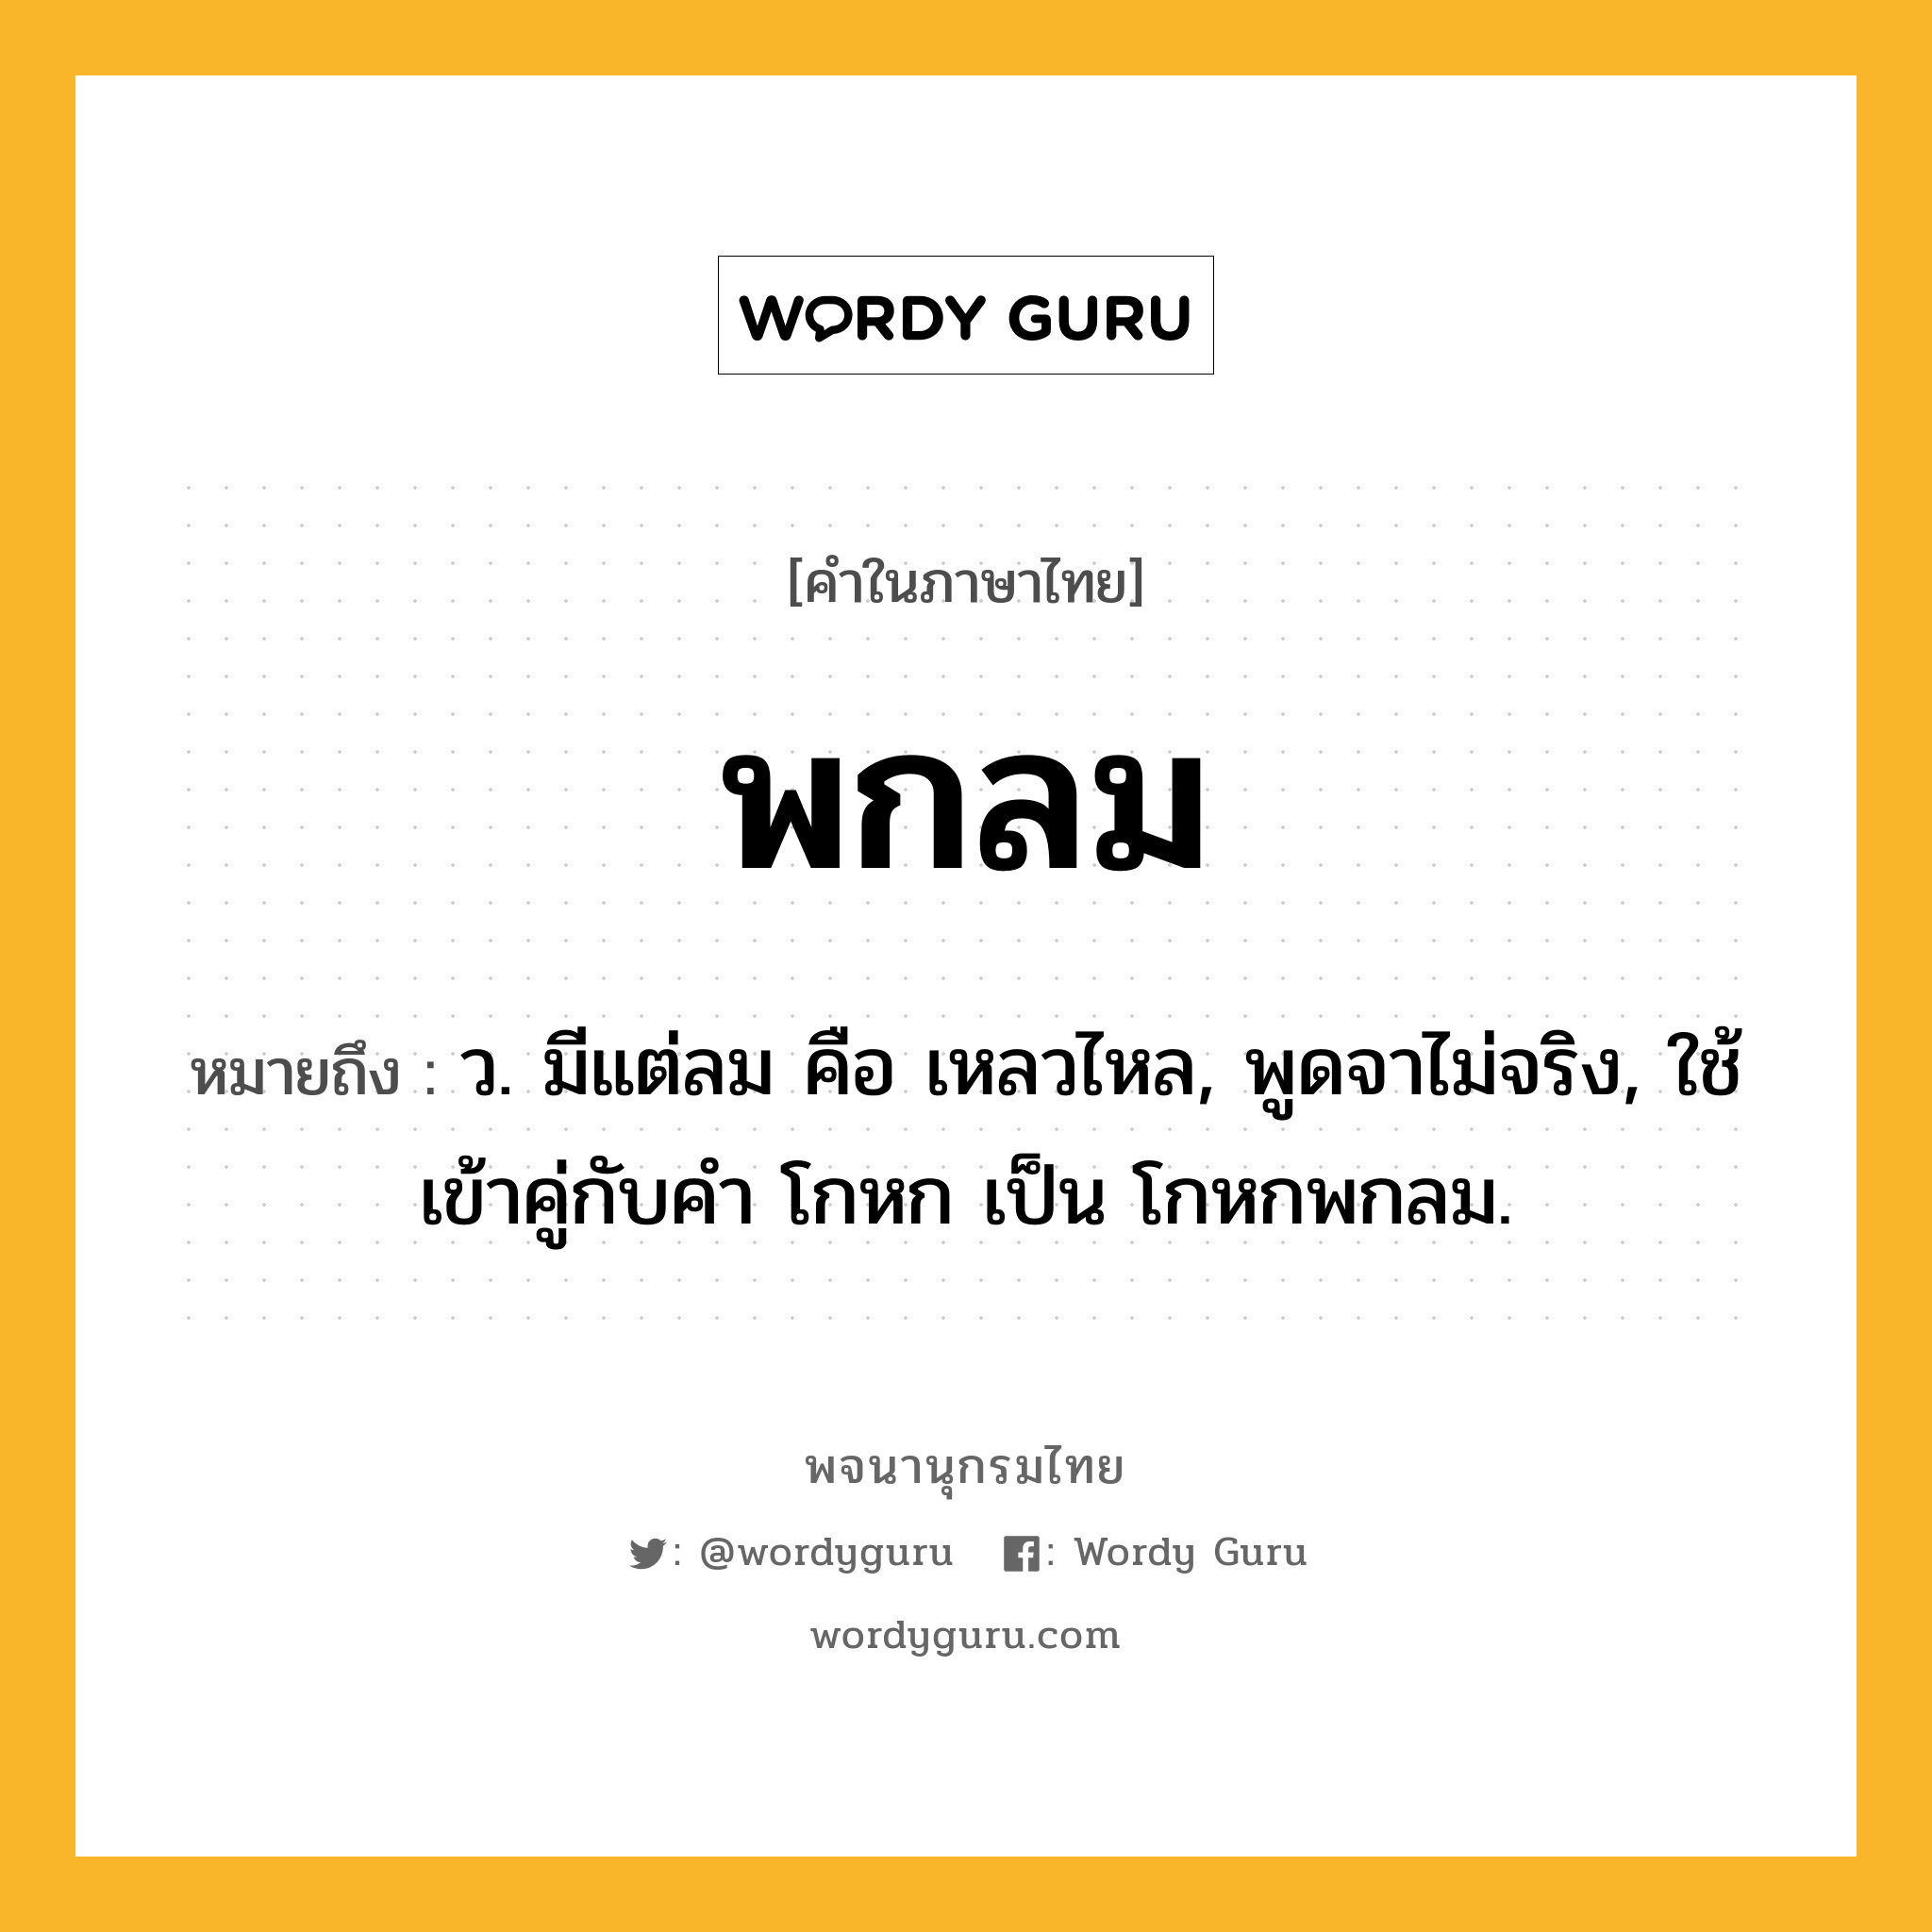 พกลม หมายถึงอะไร?, คำในภาษาไทย พกลม หมายถึง ว. มีแต่ลม คือ เหลวไหล, พูดจาไม่จริง, ใช้เข้าคู่กับคํา โกหก เป็น โกหกพกลม.